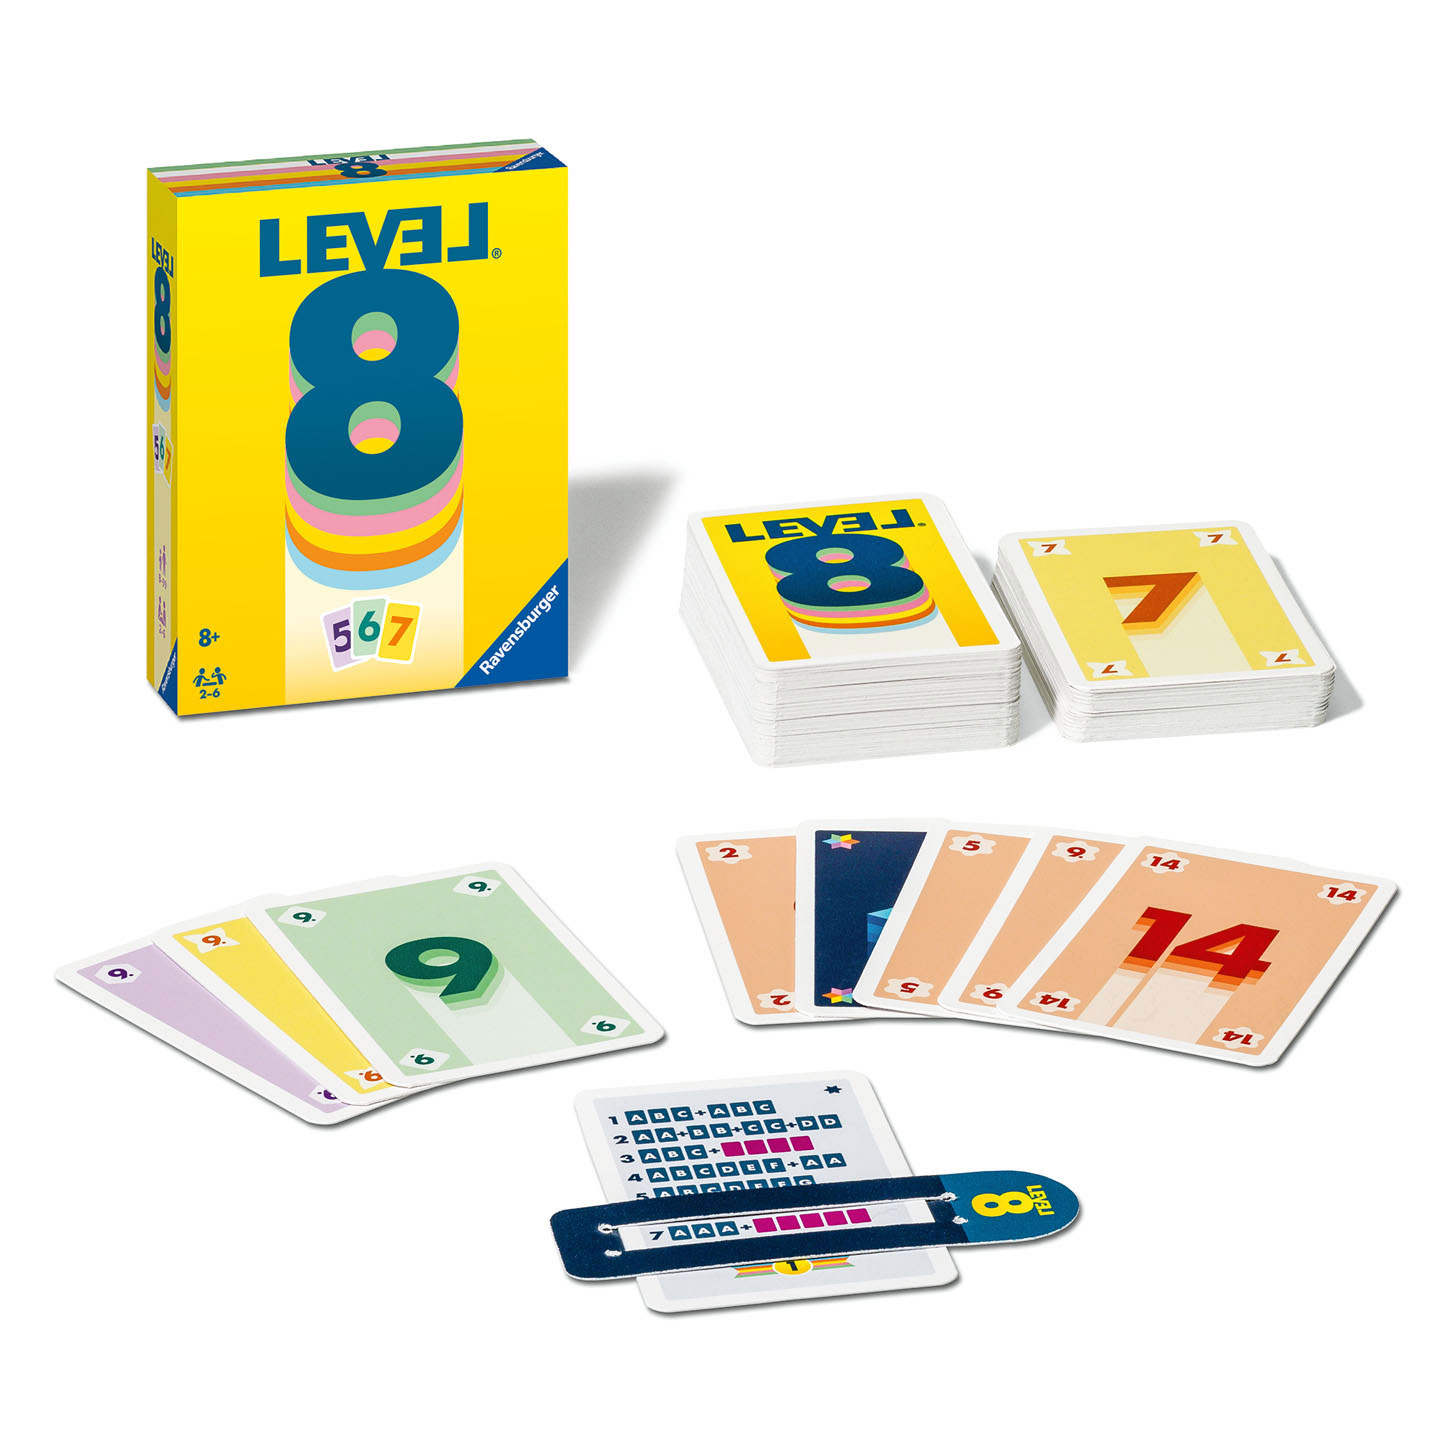 Level 8 Junior, Board Game